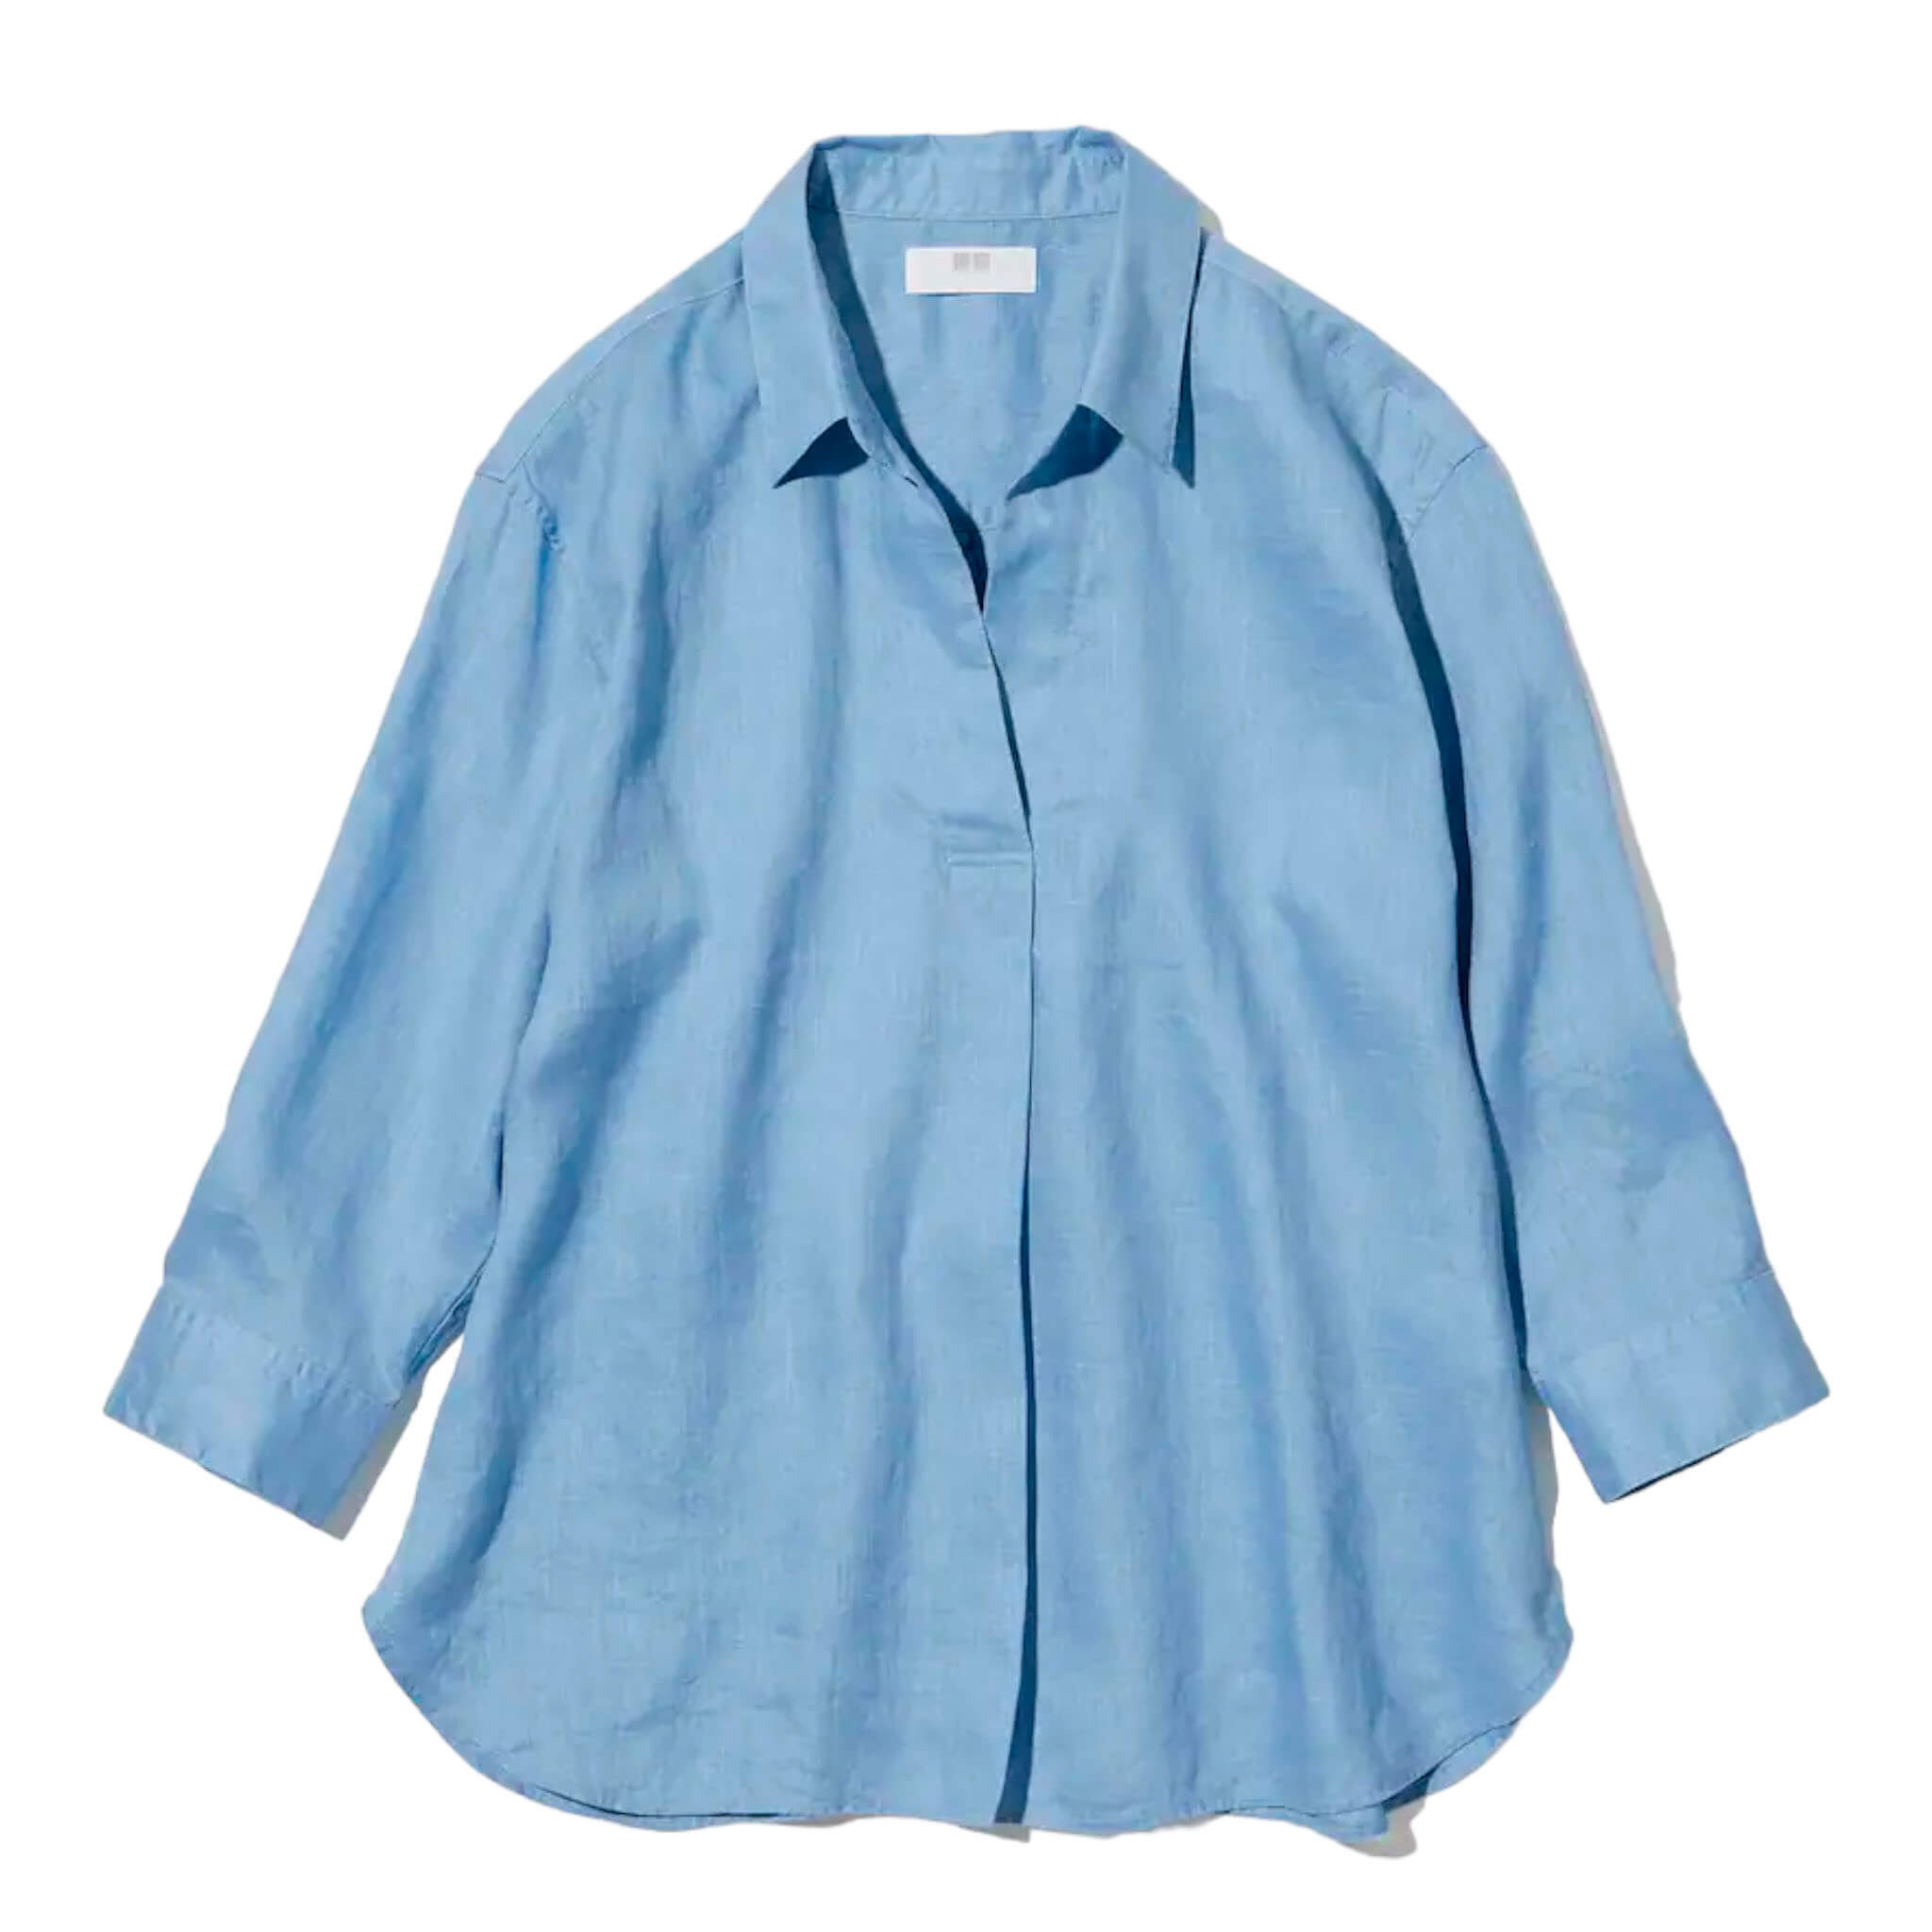 Рубашка Uniqlo Premium Linen Skipper Collar 3/4 Sleeved, голубой рубашка uniqlo 100% linen skipper collar 3 4 sleeve белый